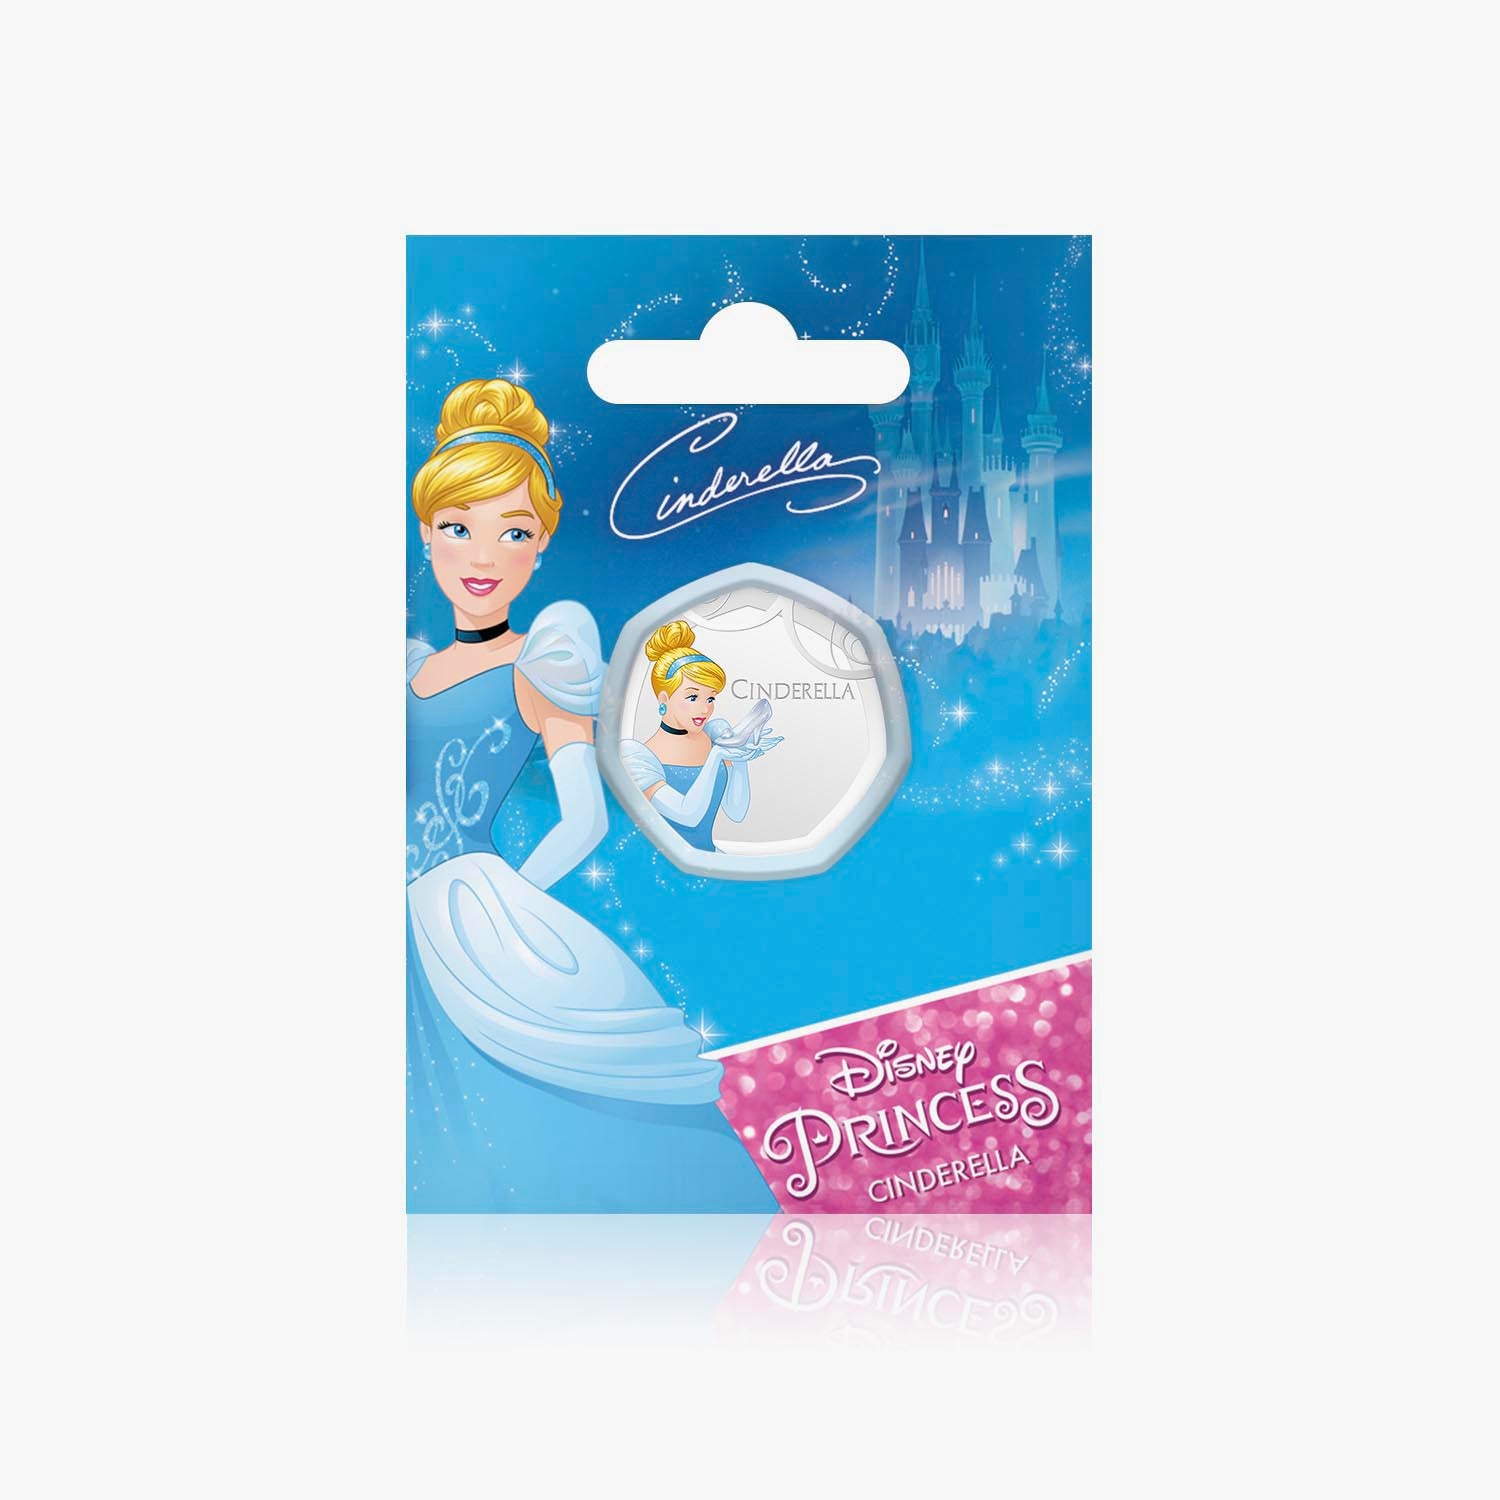 Cinderella Silver-Plated Commemorative